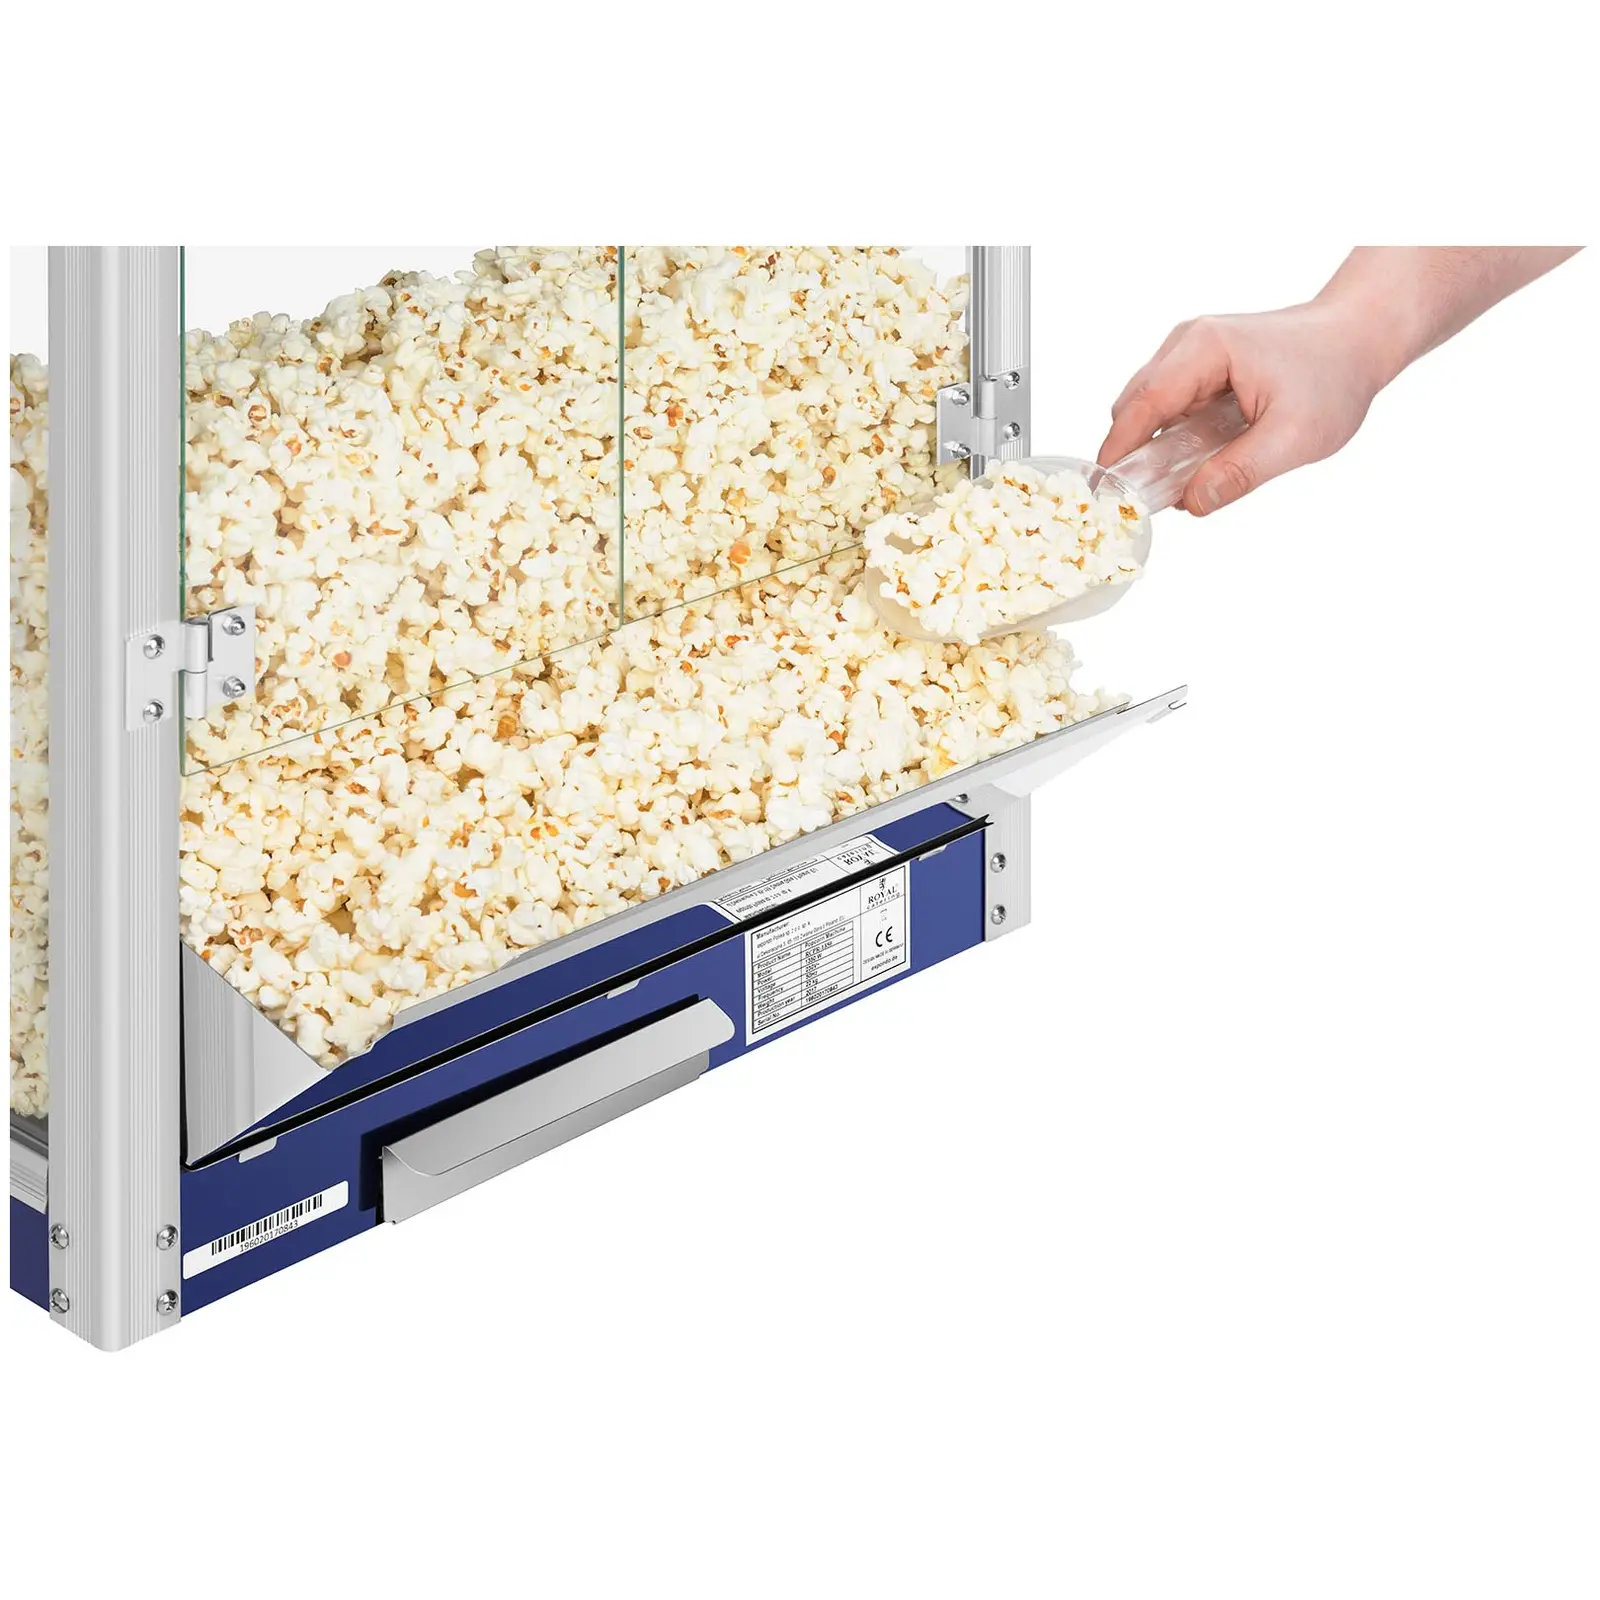 Maszyna do popcornu - 1350 ml - 110 s - 8 oz